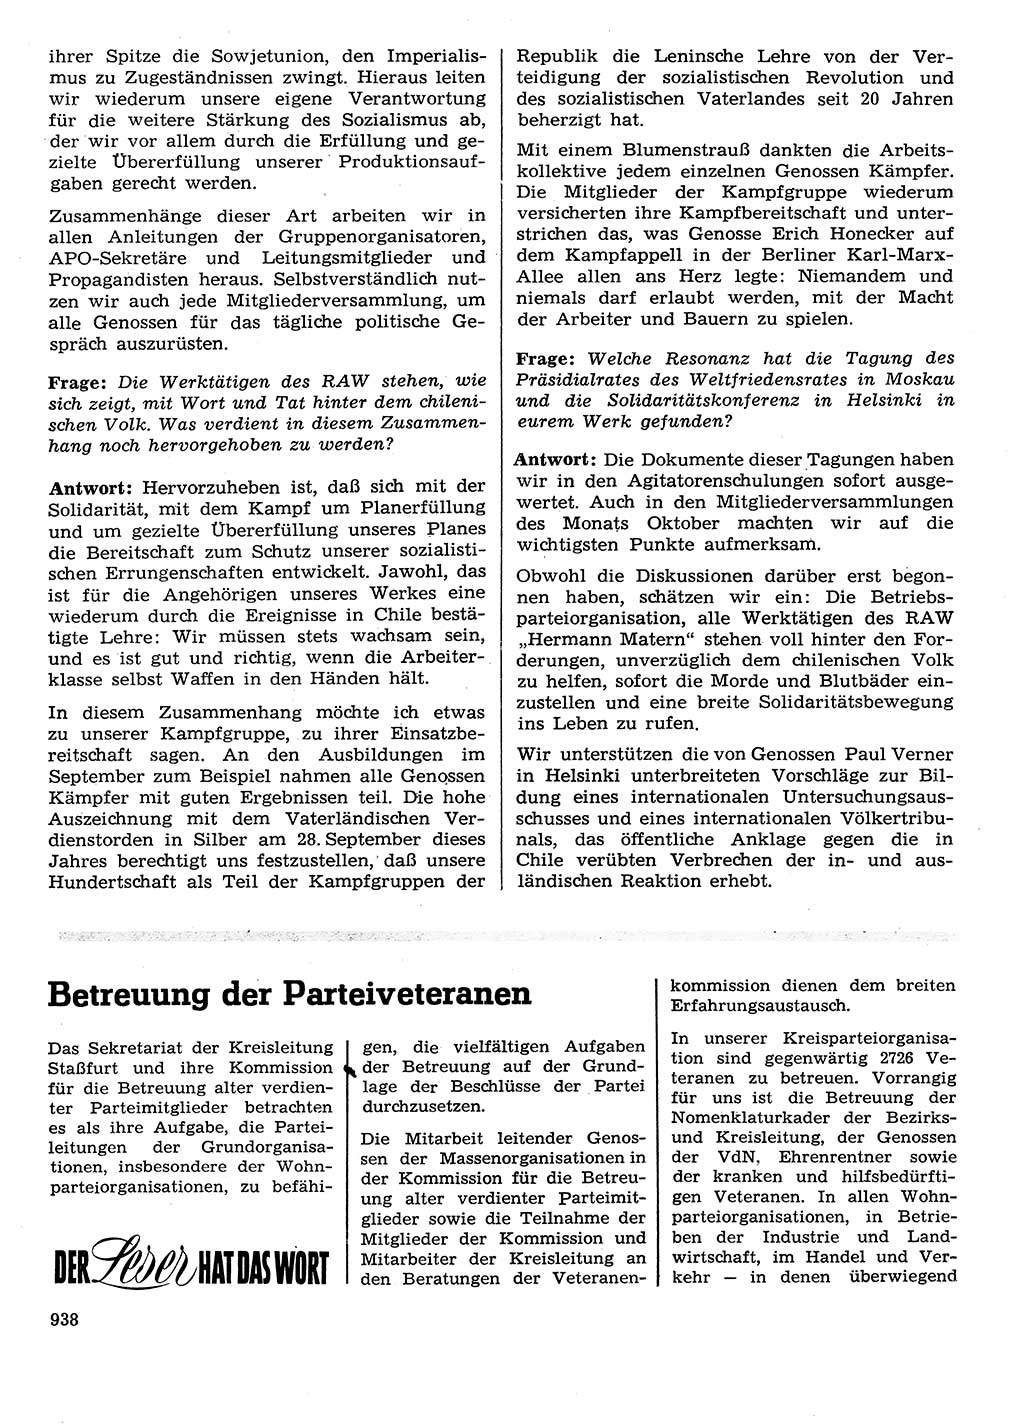 Neuer Weg (NW), Organ des Zentralkomitees (ZK) der SED (Sozialistische Einheitspartei Deutschlands) für Fragen des Parteilebens, 28. Jahrgang [Deutsche Demokratische Republik (DDR)] 1973, Seite 938 (NW ZK SED DDR 1973, S. 938)